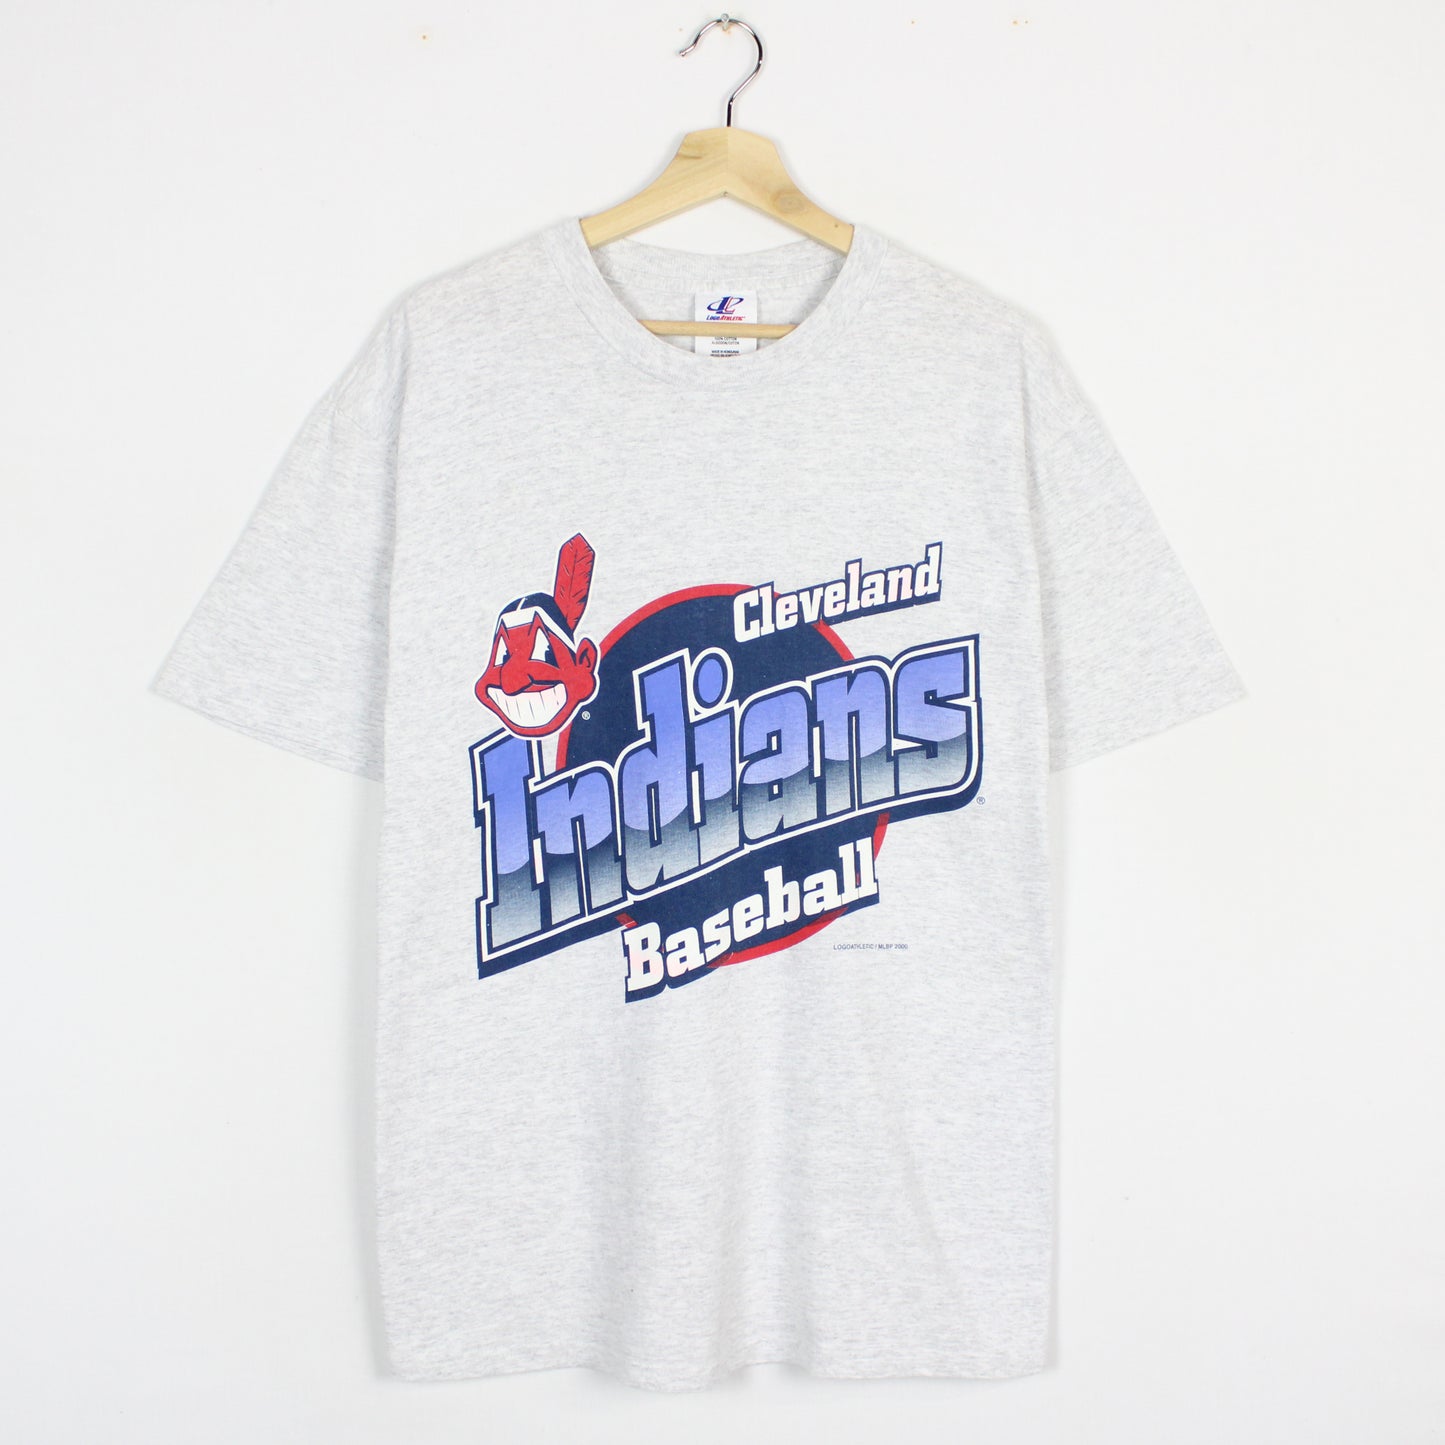 Vintage 2000 Cleveland Indians MLB Tee - L